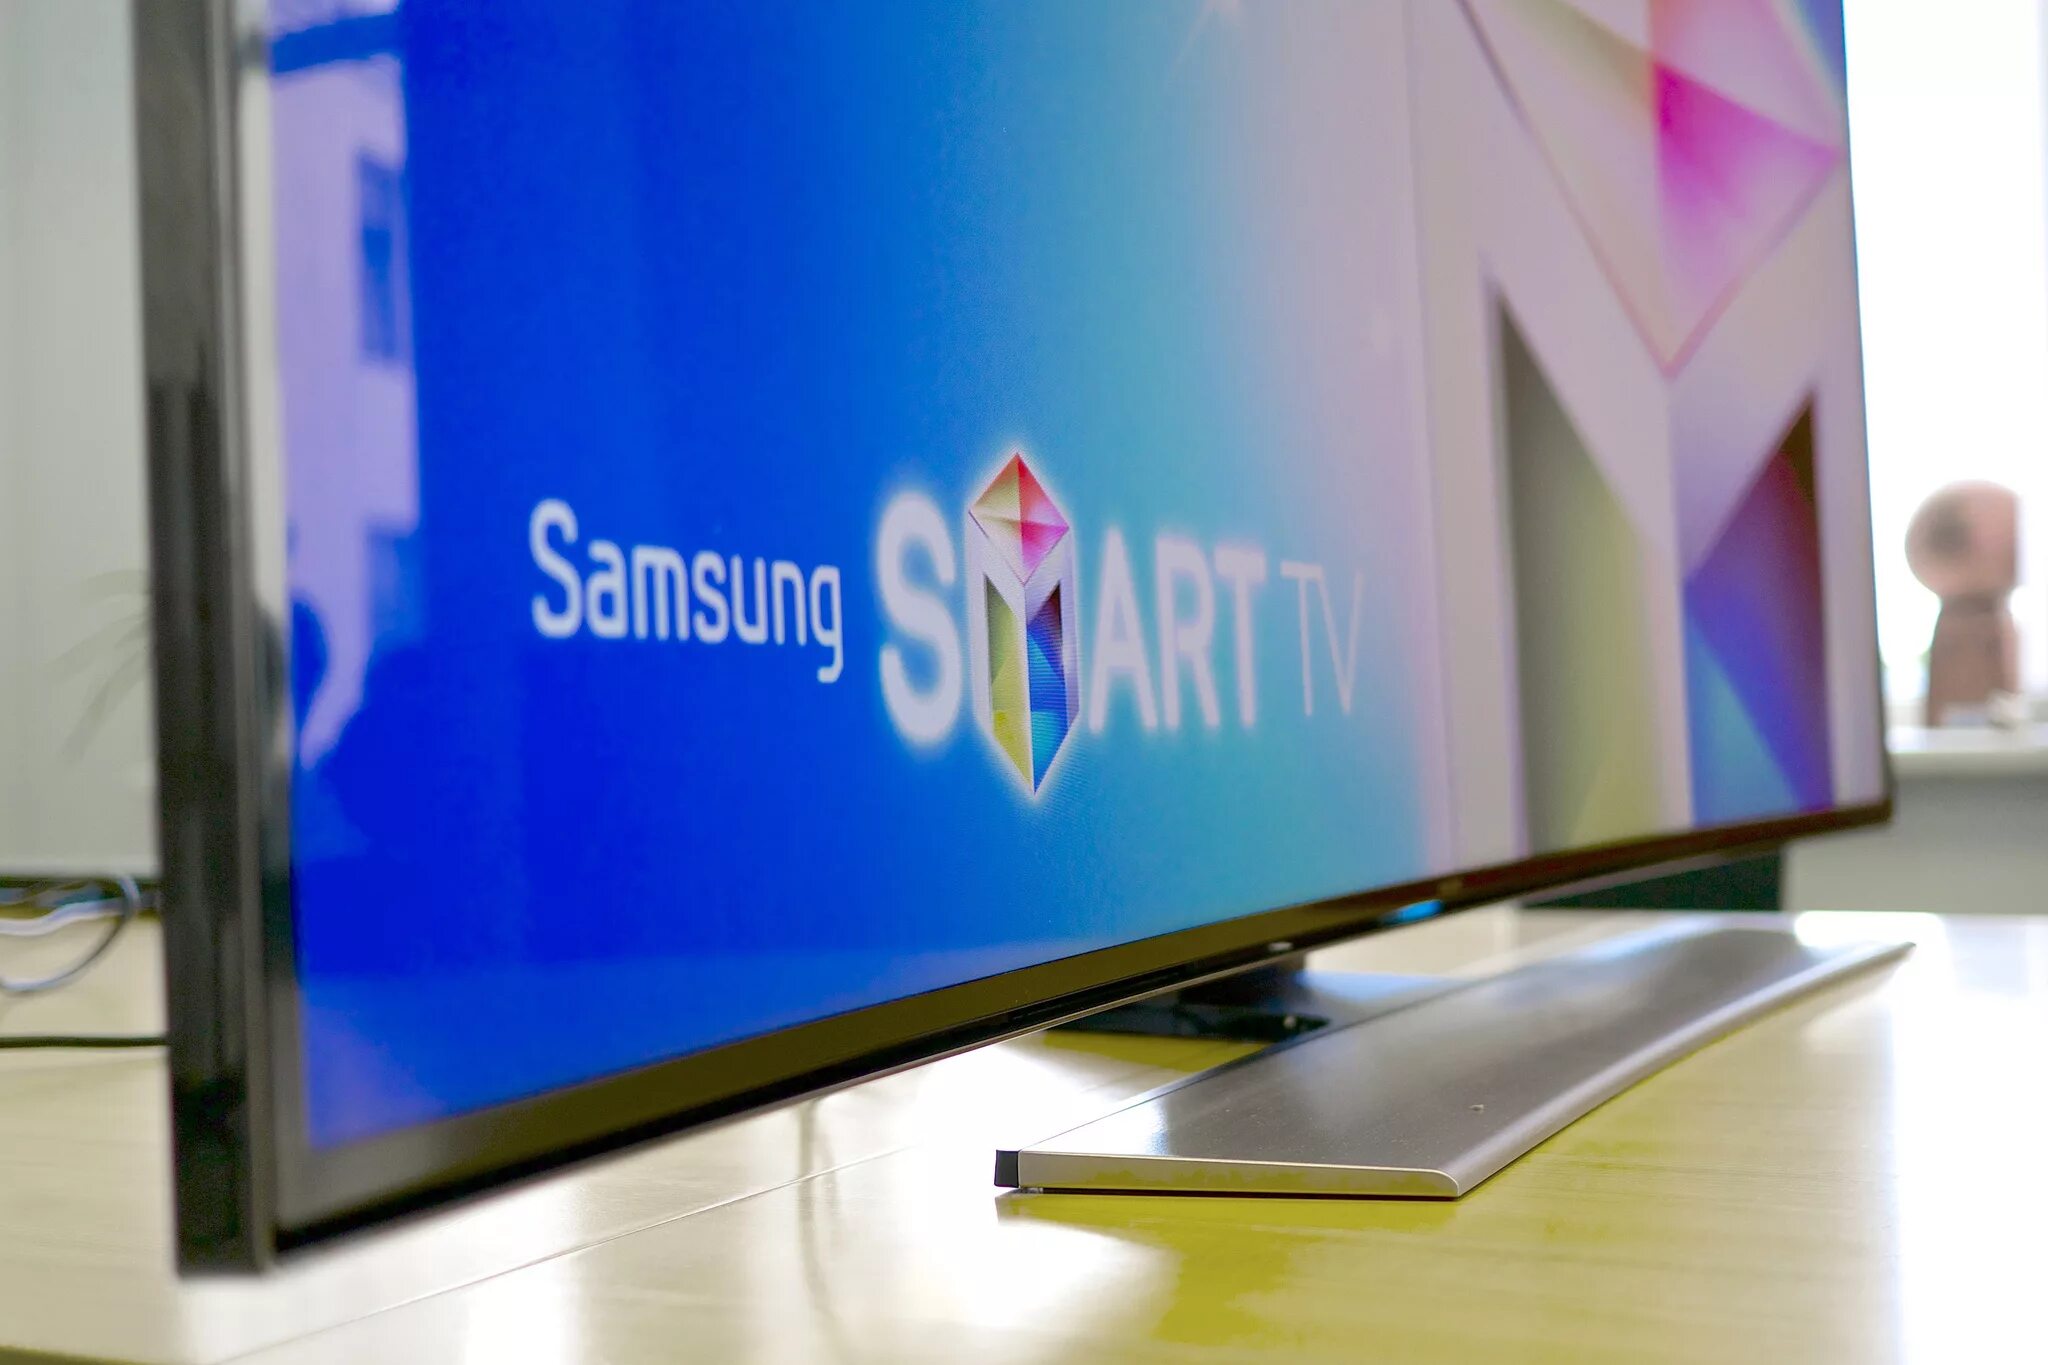 Samsung Smart TV 2022. Телевизор Samsung Smart TV. Led телевизор Samsung смарт. Samsung Smart TV Plus. Обновился телевизор самсунг